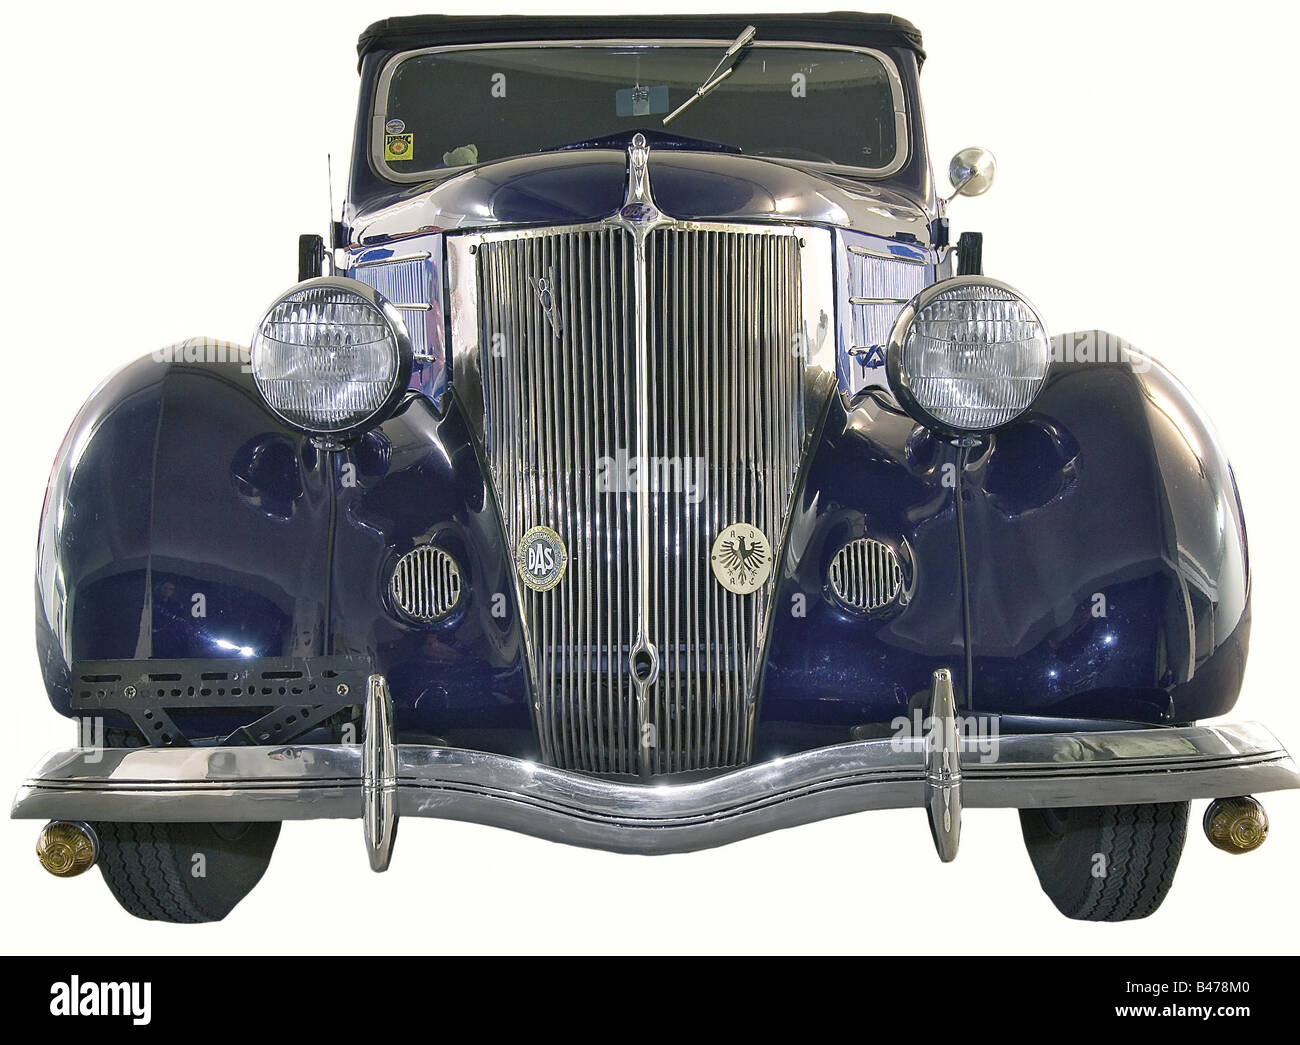 Ford 48 Club Cabriolet, USA., Ford Modell 1936, 2 Türen, 2 + 2 Sitze (Zusatzsitze), Motor 3620 ccm (221 Kubikzoll), V8 Motor witz 90 PS (85 PS), 3 Gänge Schaltgetriebe, Original 6-Volt-Elektrik. Zweifarbige Oberfläche blau/dunkelblau, schwarzes Verdeck, originale Ledersitzbezüge, ein kabelbetriebenes Radio von 1948. Komplett und professionell mit ausschließlich Originalteilen restauriert (für diese Modelle ist noch eine gute Ersatzteilverfügbarkeit vorhanden). Nach der Wiederherstellung der Strecke 6800 km (4225 Meilen) - Langstrecke. Deutsche Fahrzeugzulassung und, Stockfoto